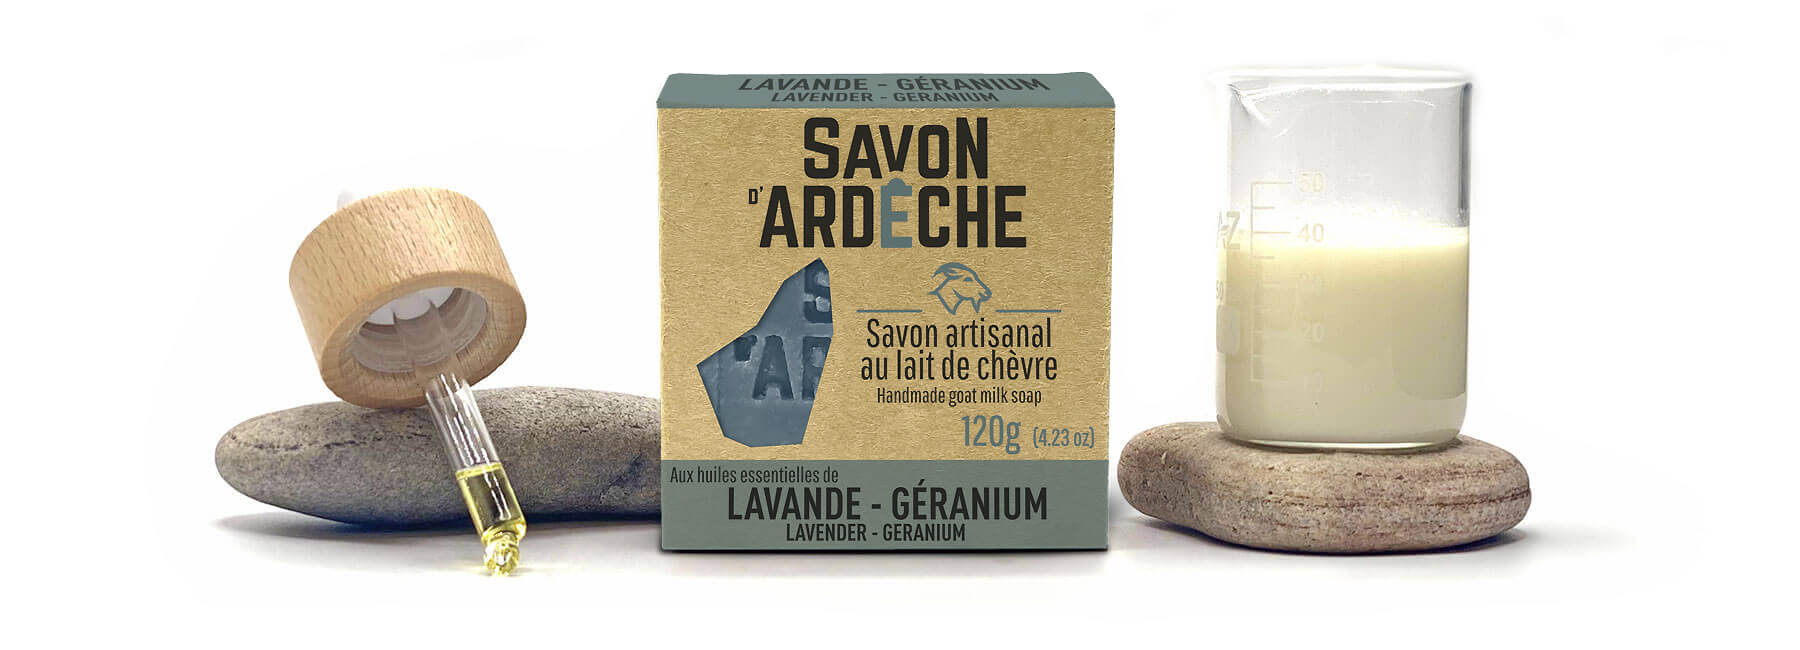 Le Savon d'Ardèche composé de lait de chèvre et d'huiles essentielles de Lavande